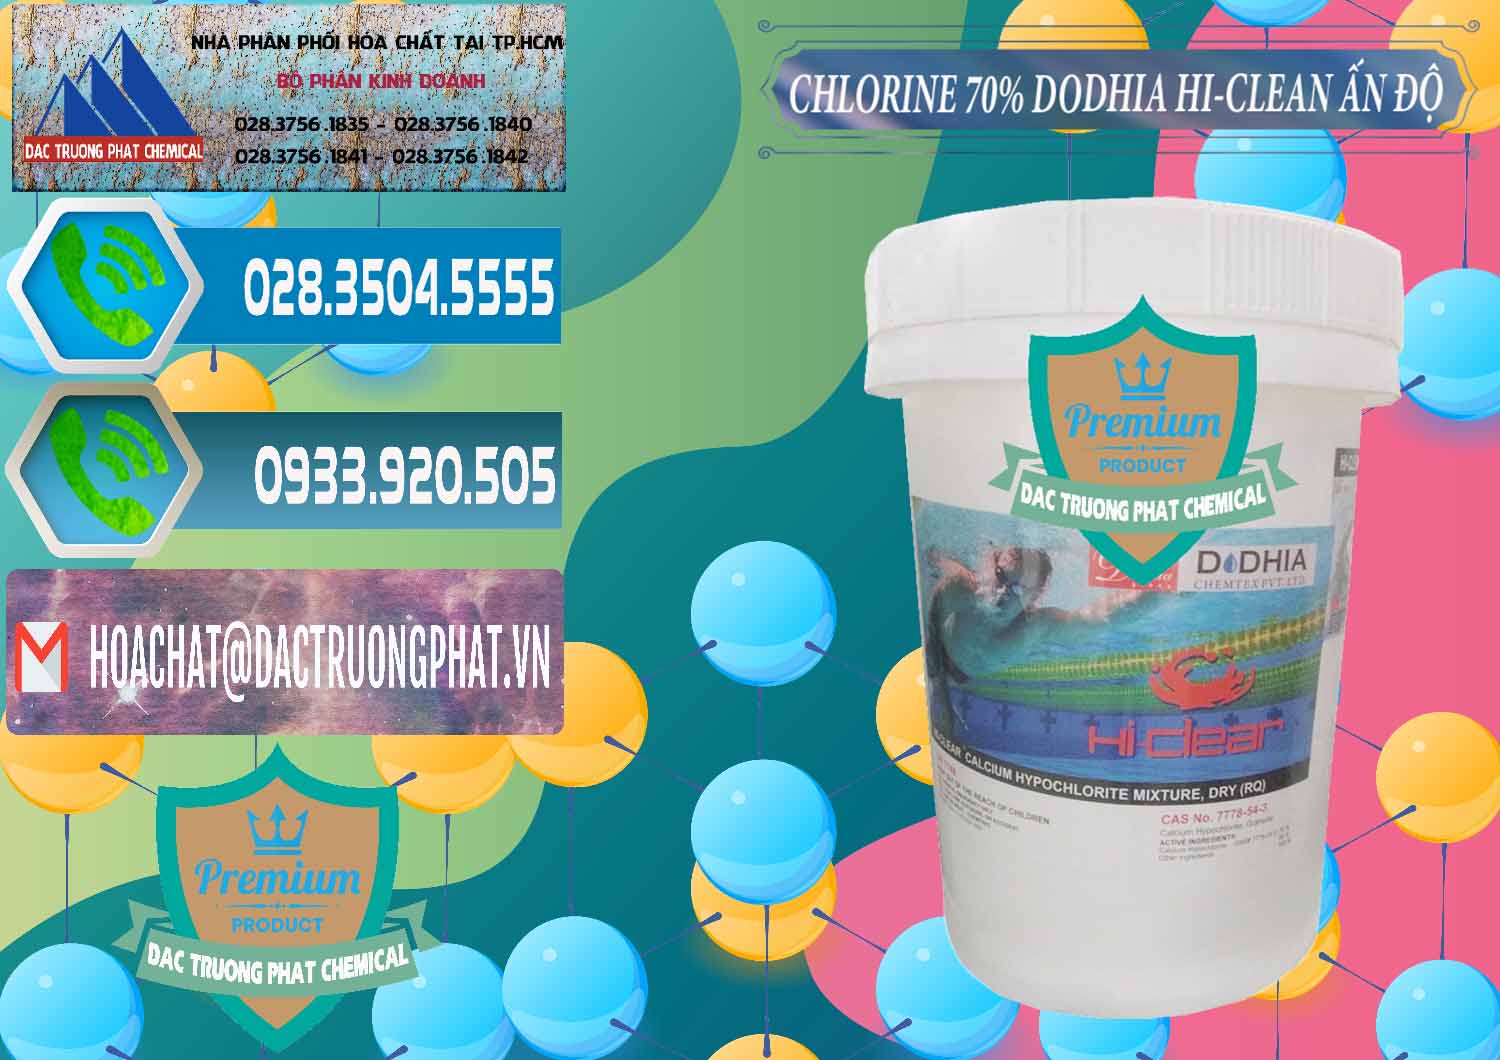 Chuyên bán và cung ứng Chlorine – Clorin 70% Dodhia Hi-Clean Ấn Độ India - 0214 - Nơi chuyên kinh doanh ( cung cấp ) hóa chất tại TP.HCM - congtyhoachat.net